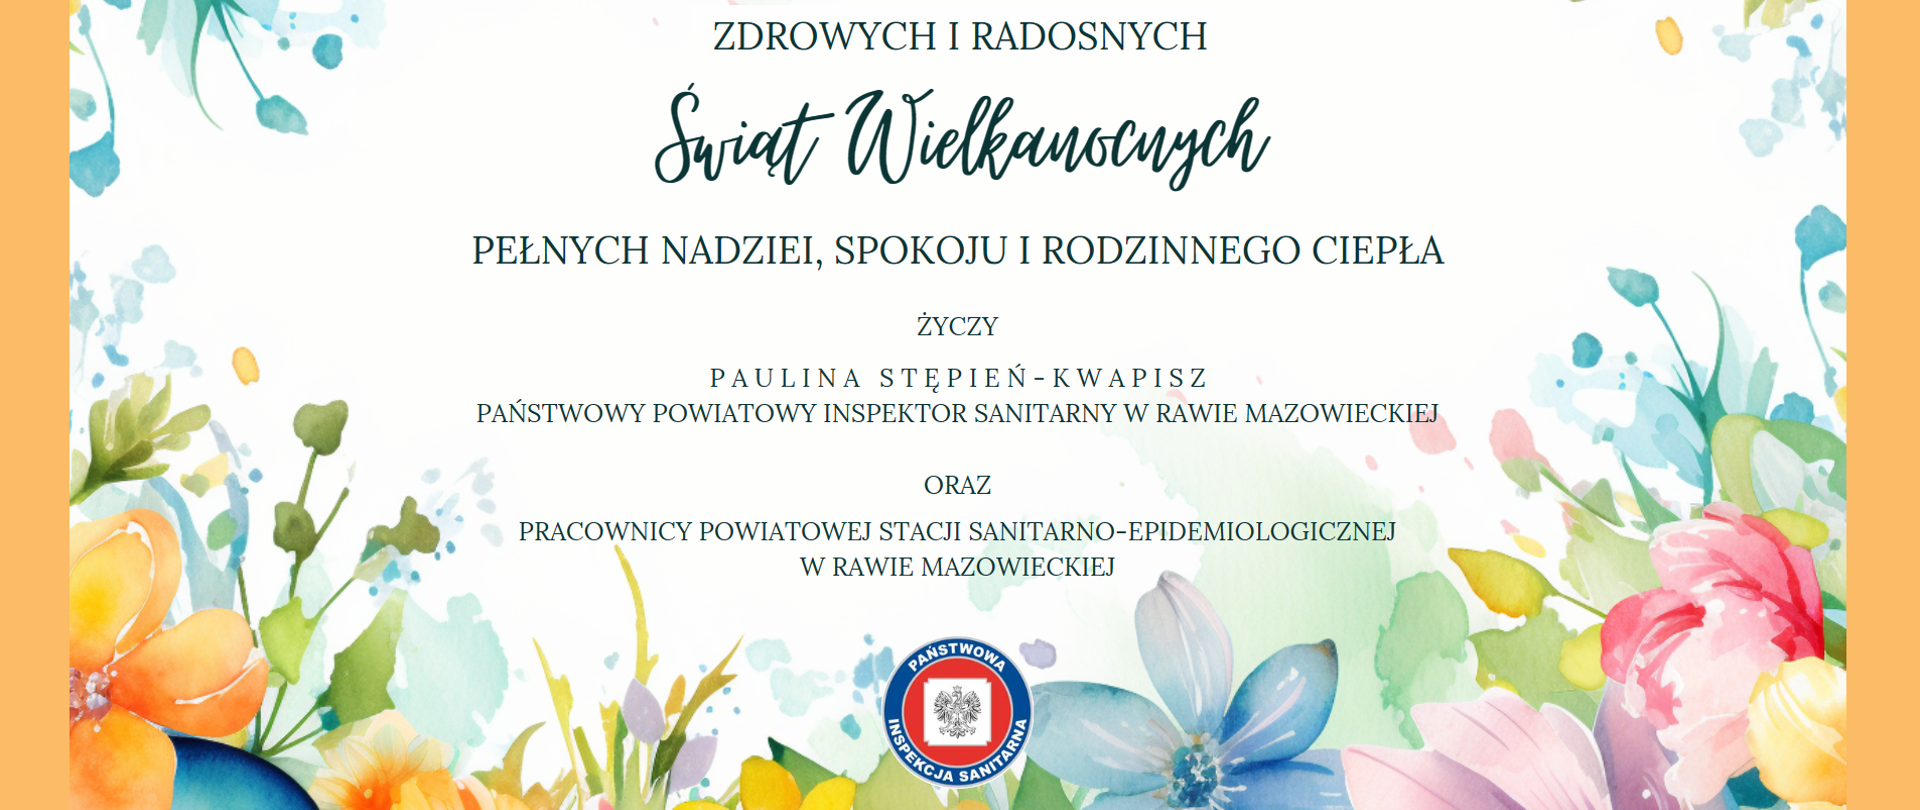 Życzenia Wielkanocne od pracowników Powiatowej Stacji Sanitarno-Epidemiologicznej w Rawie Mazowieckiej